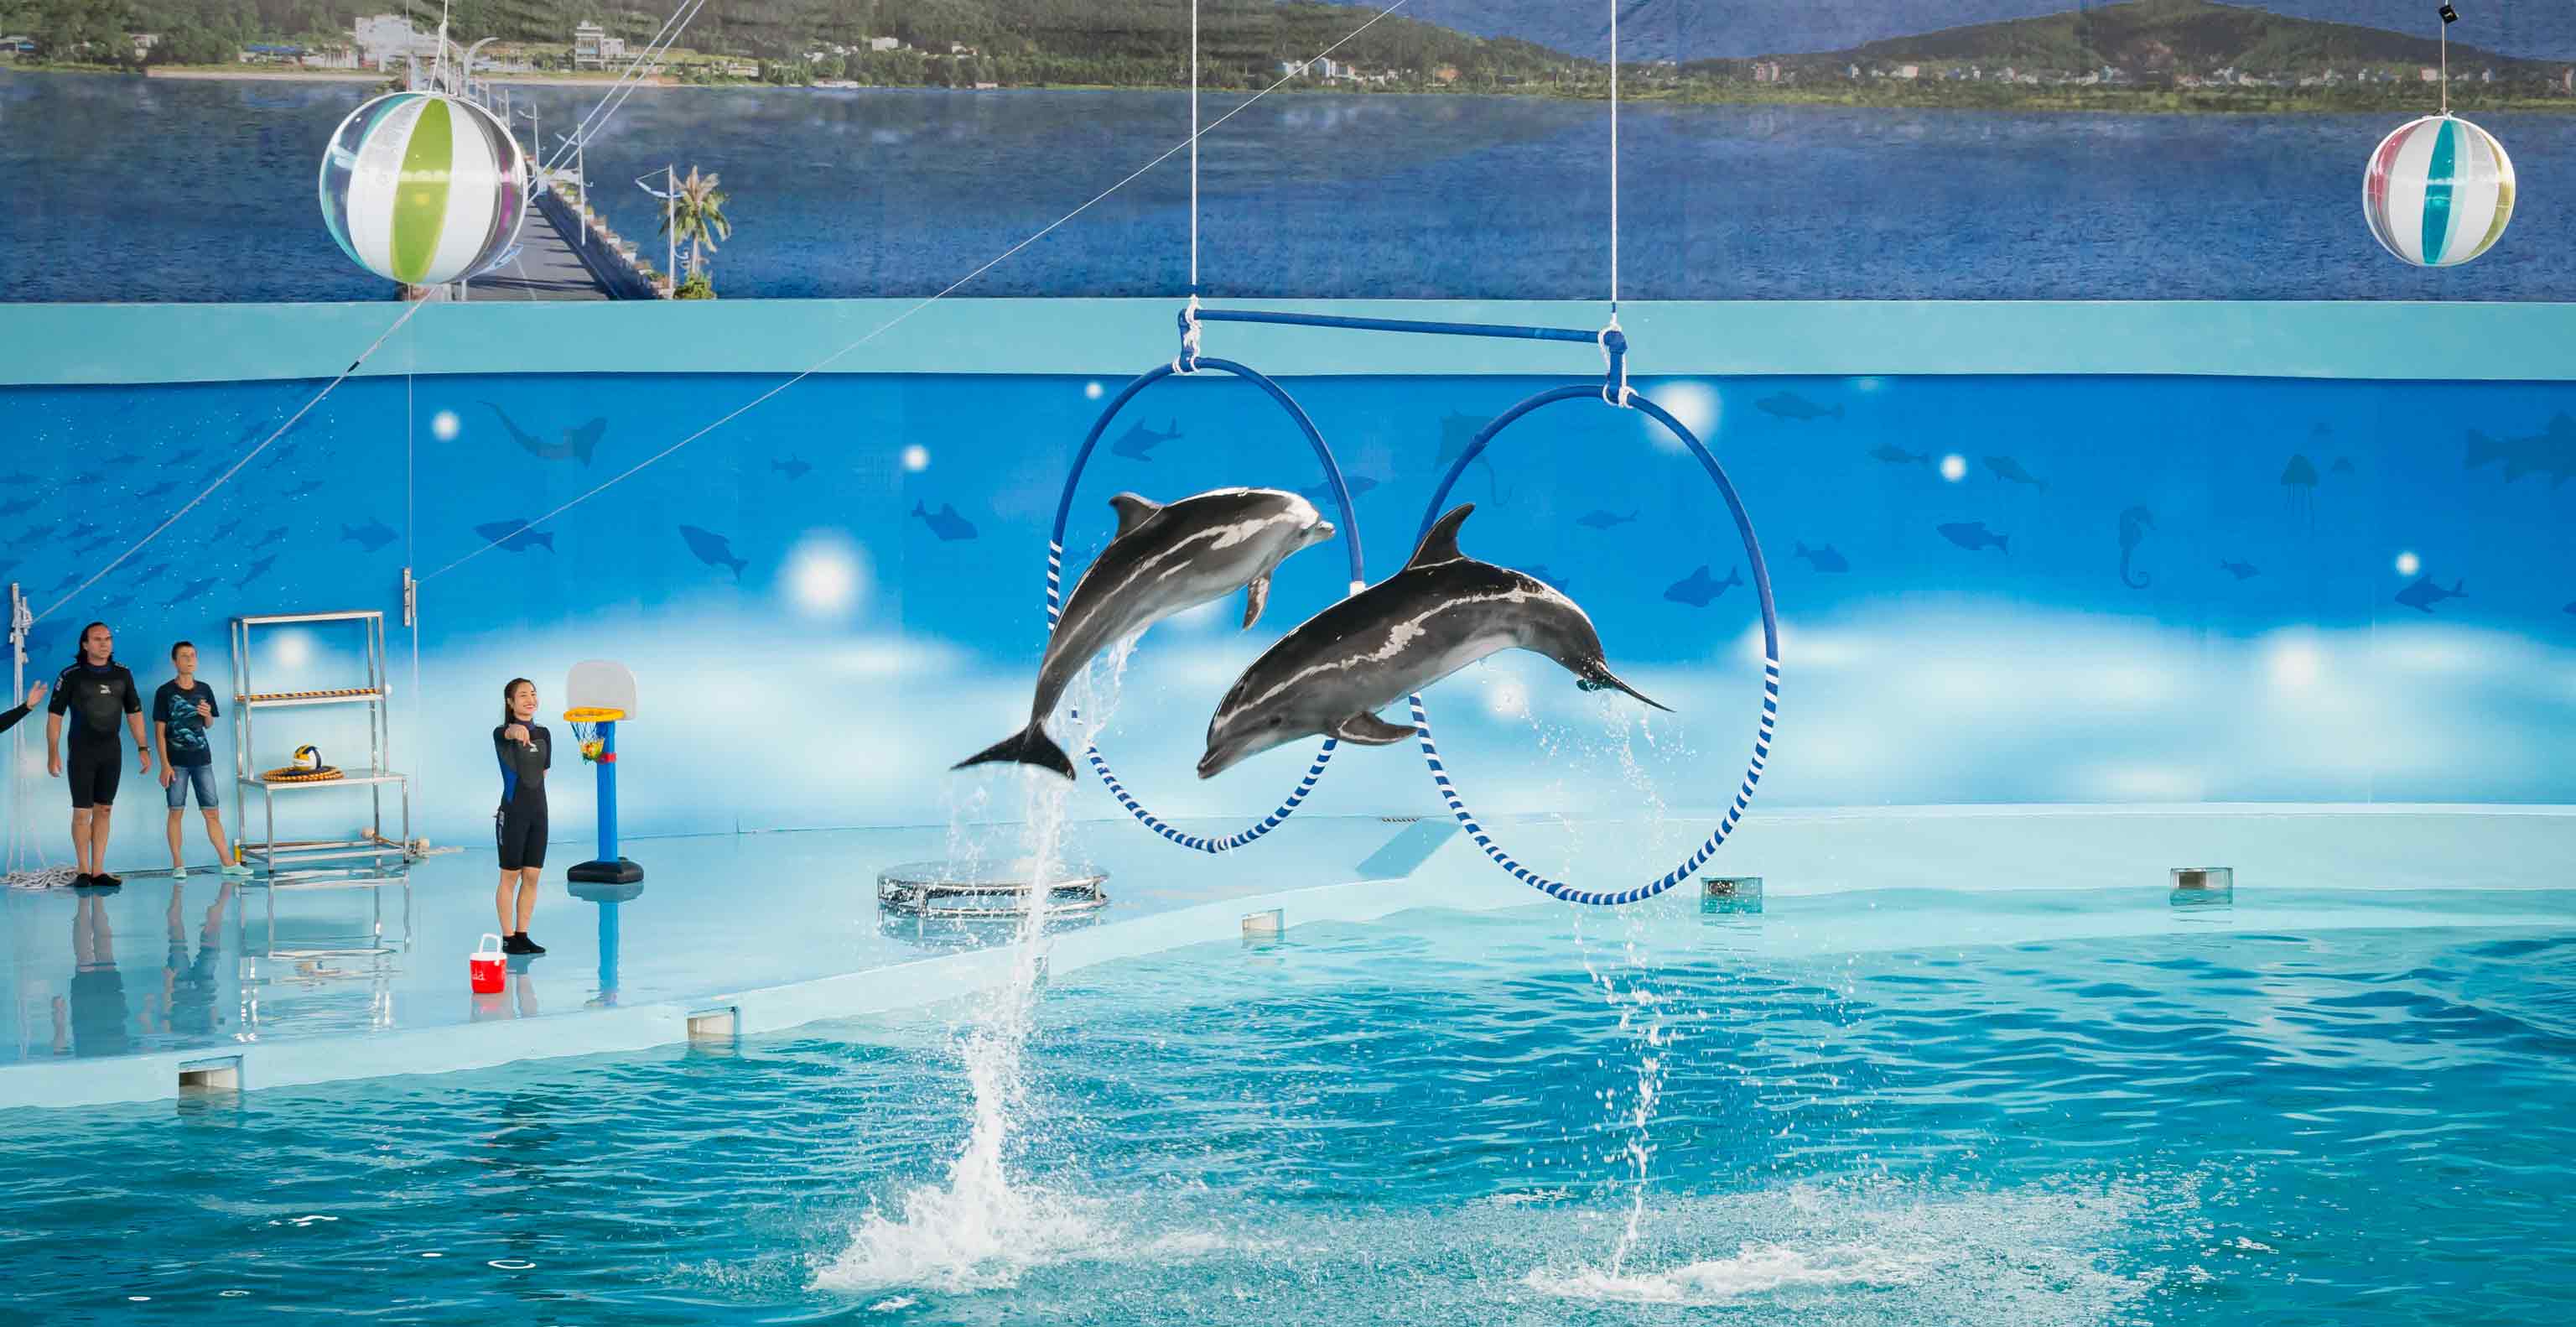 Baara Land dolphin show